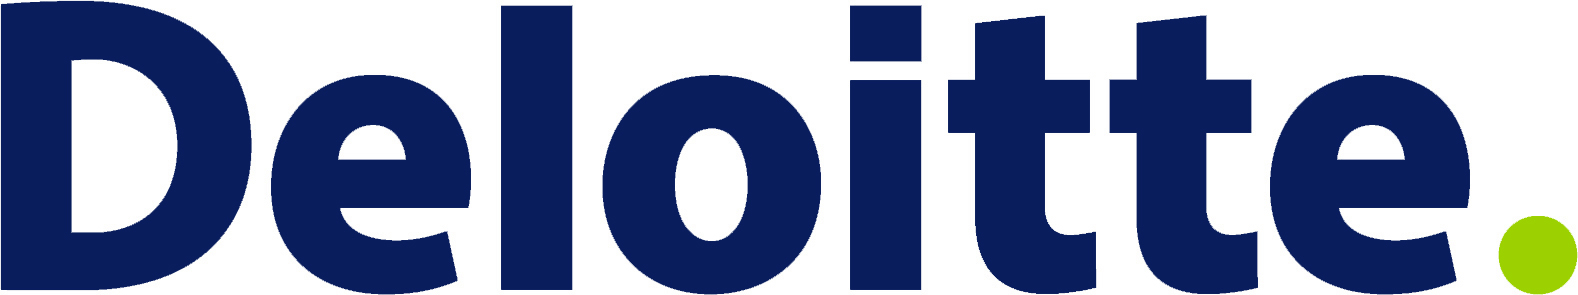 deloitte-logo-2011.jpg